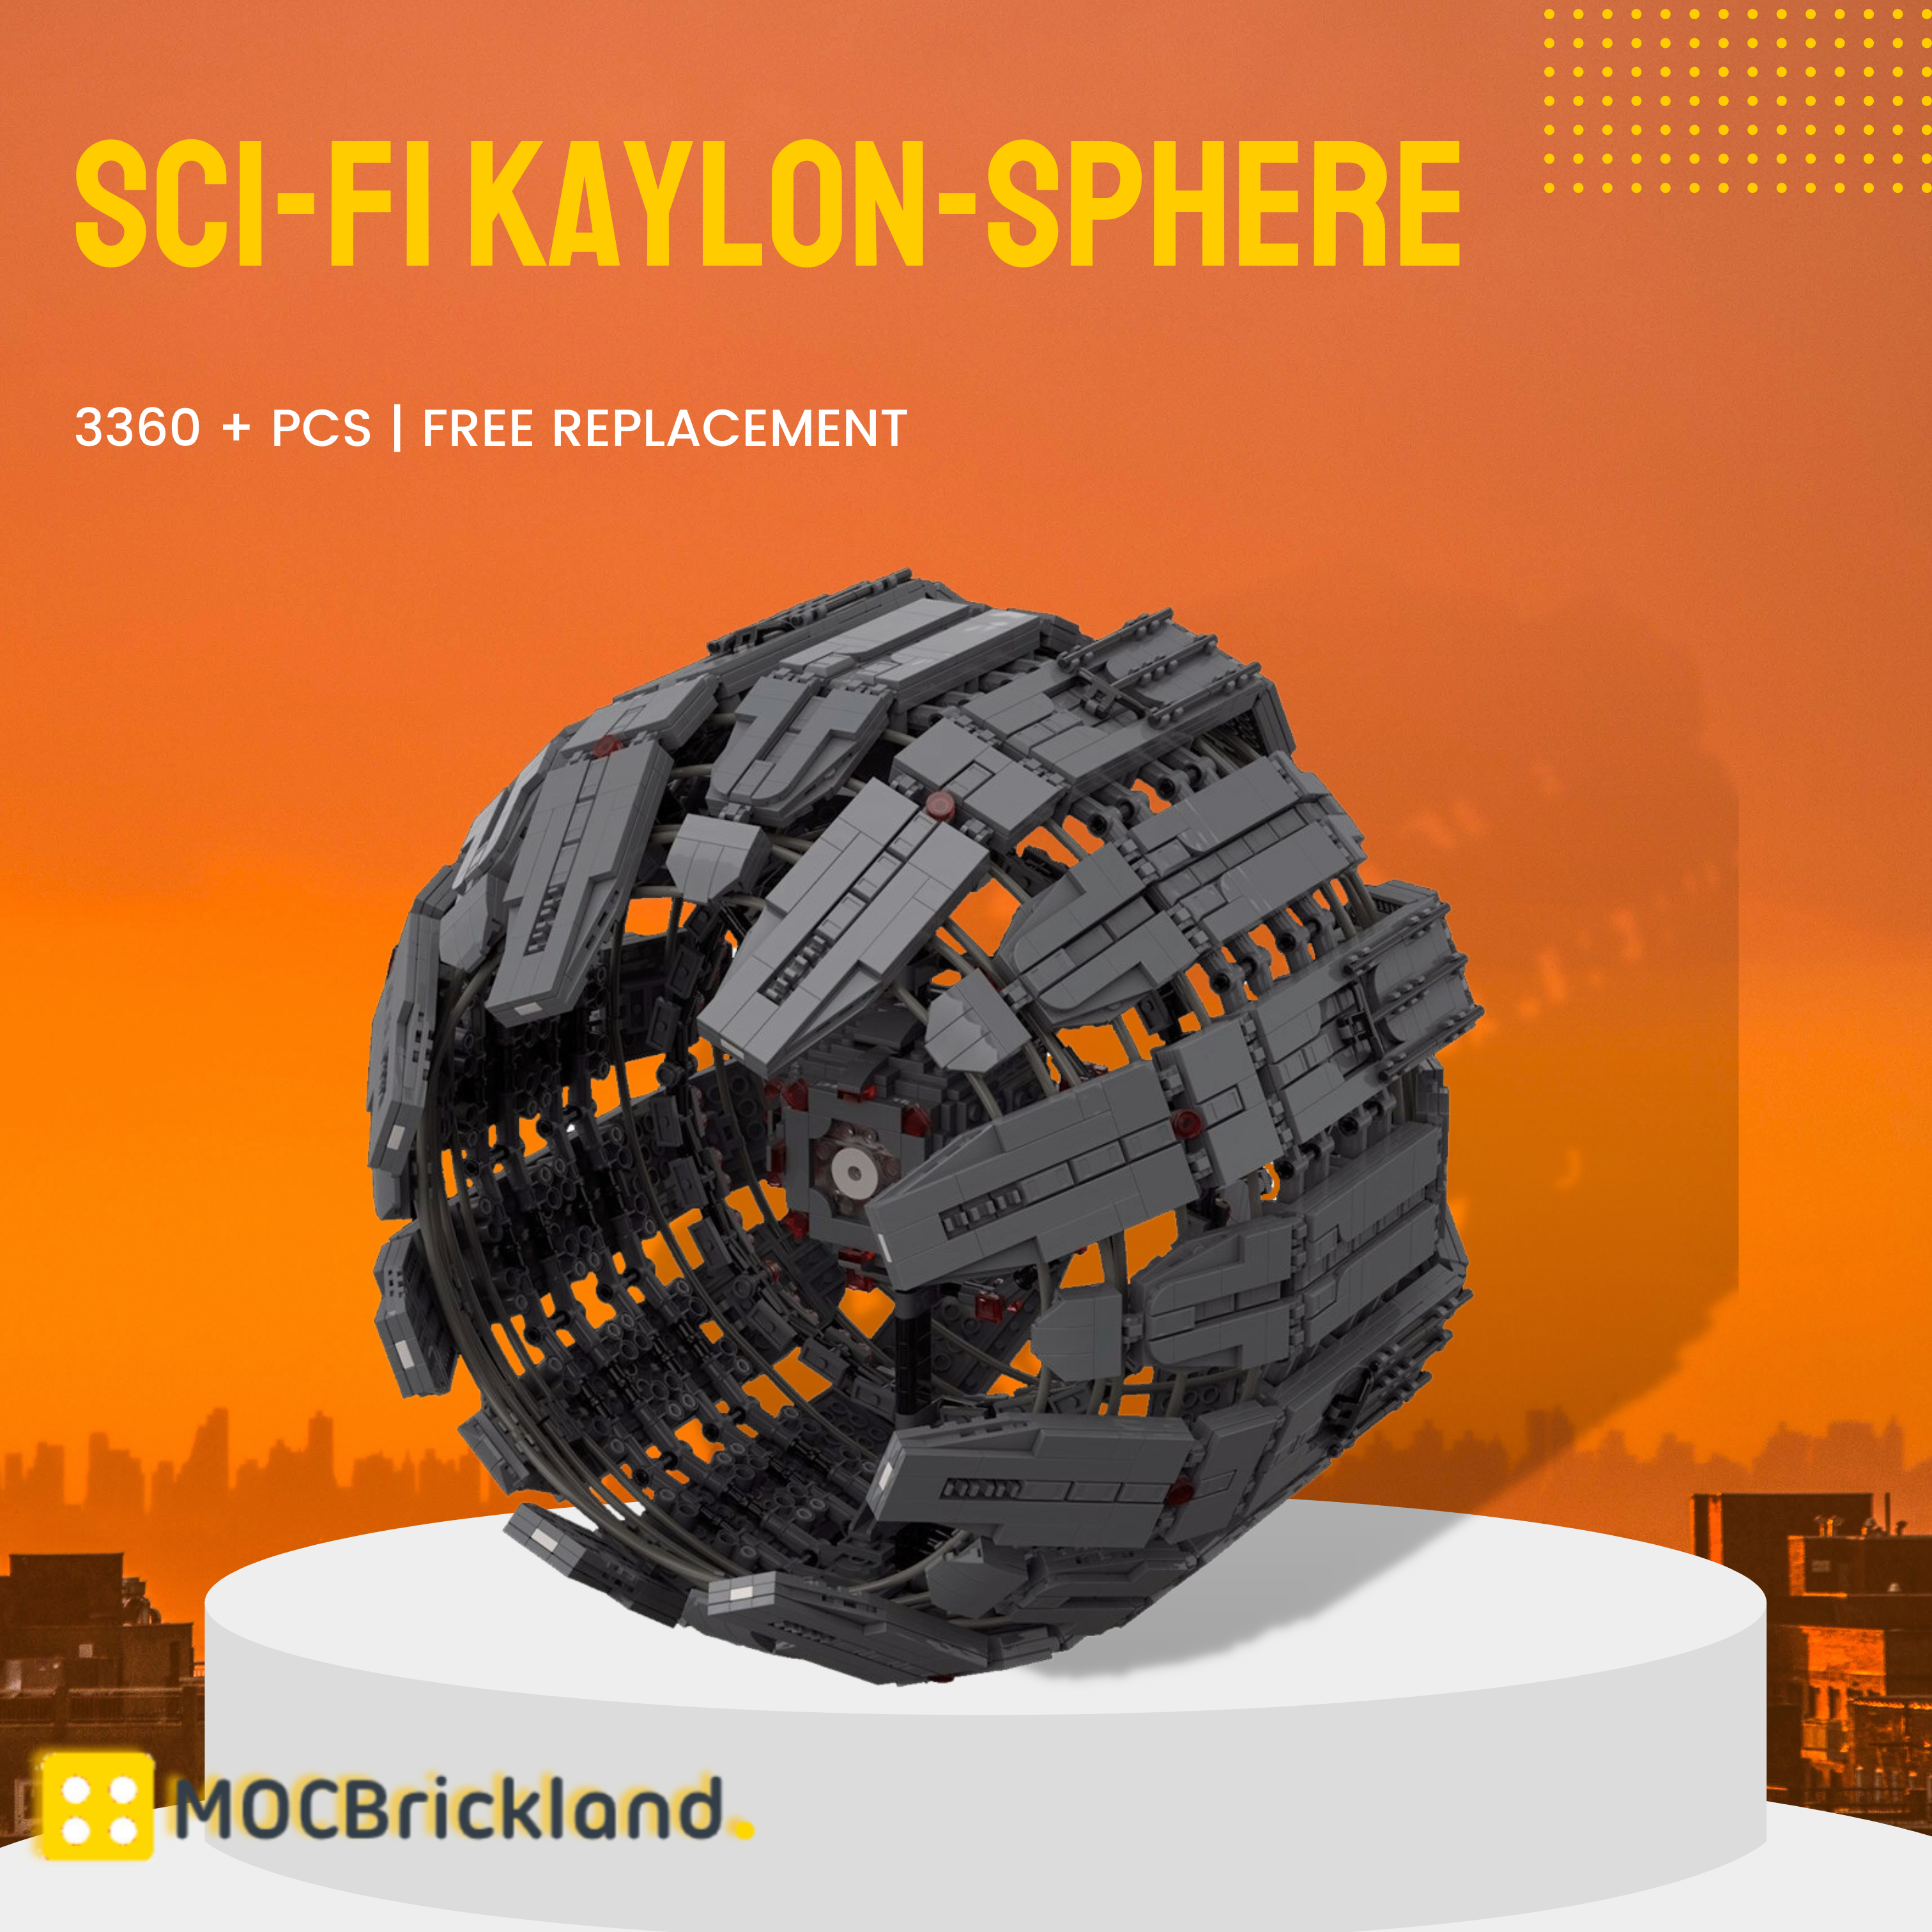 Sci Fi Kaylon Sphere Moc 118140